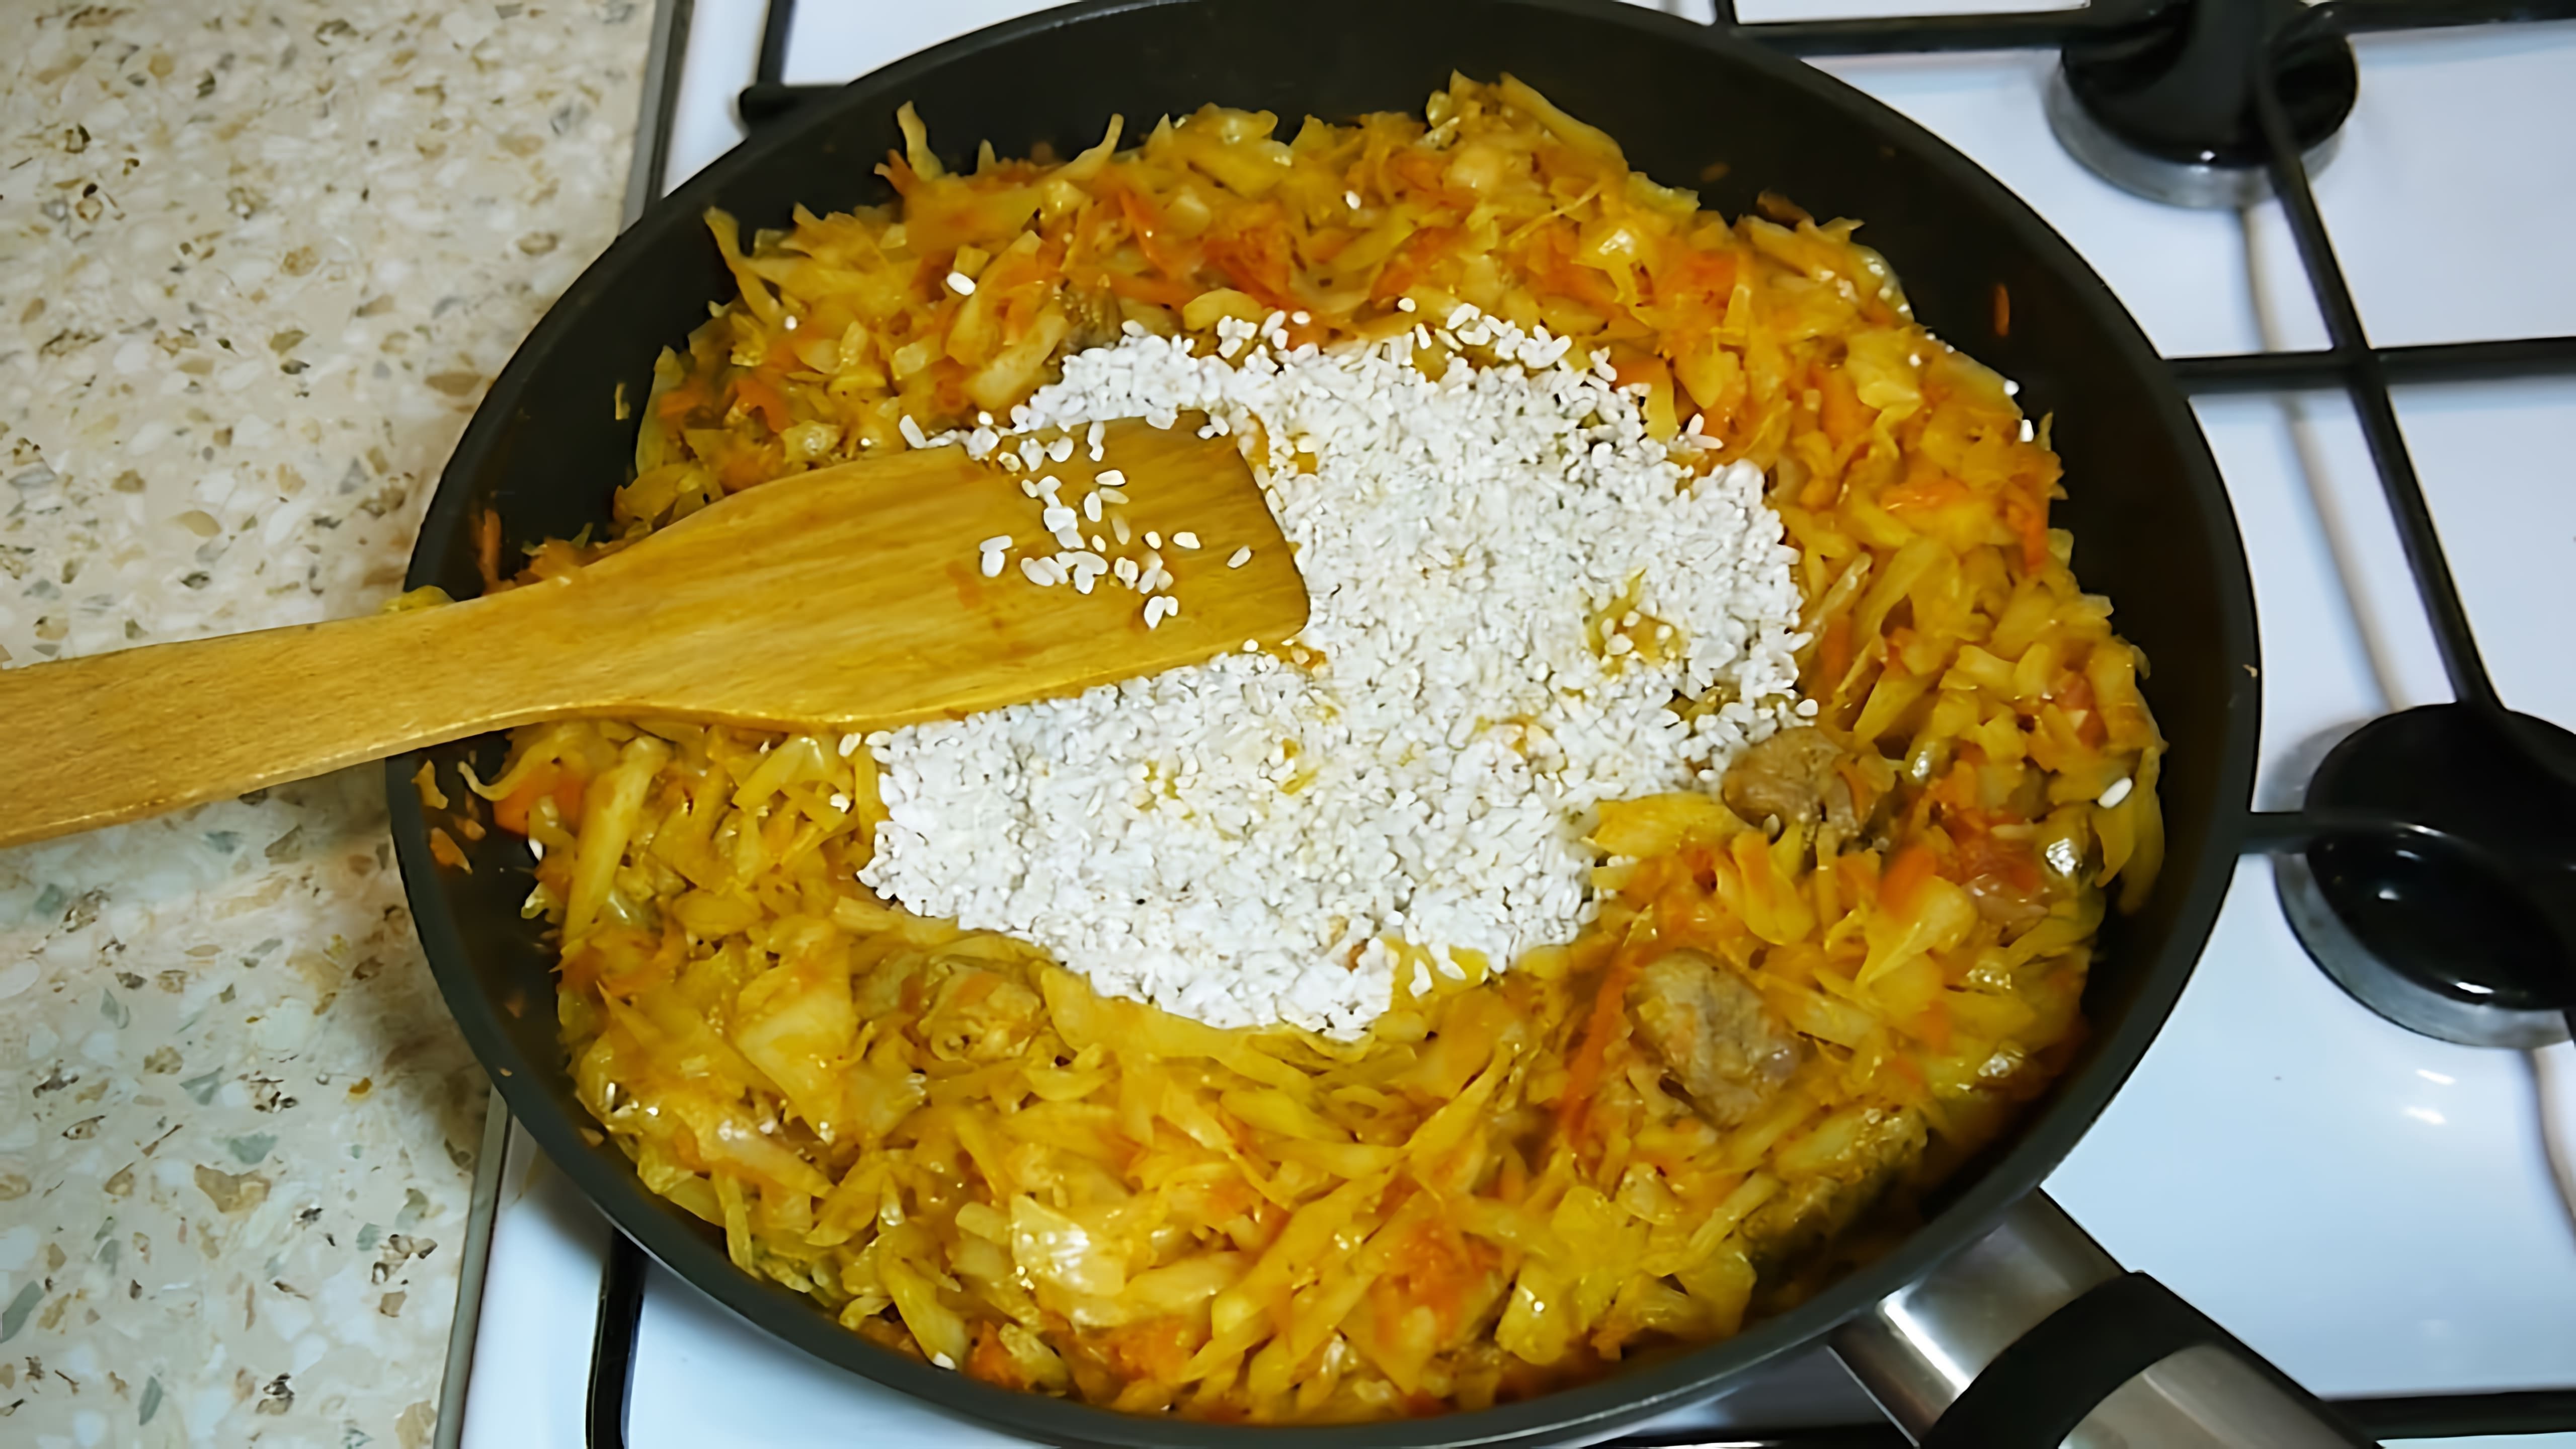 В этом видео демонстрируется процесс приготовления вкусного и сытного блюда - капусты с рисом и мясом